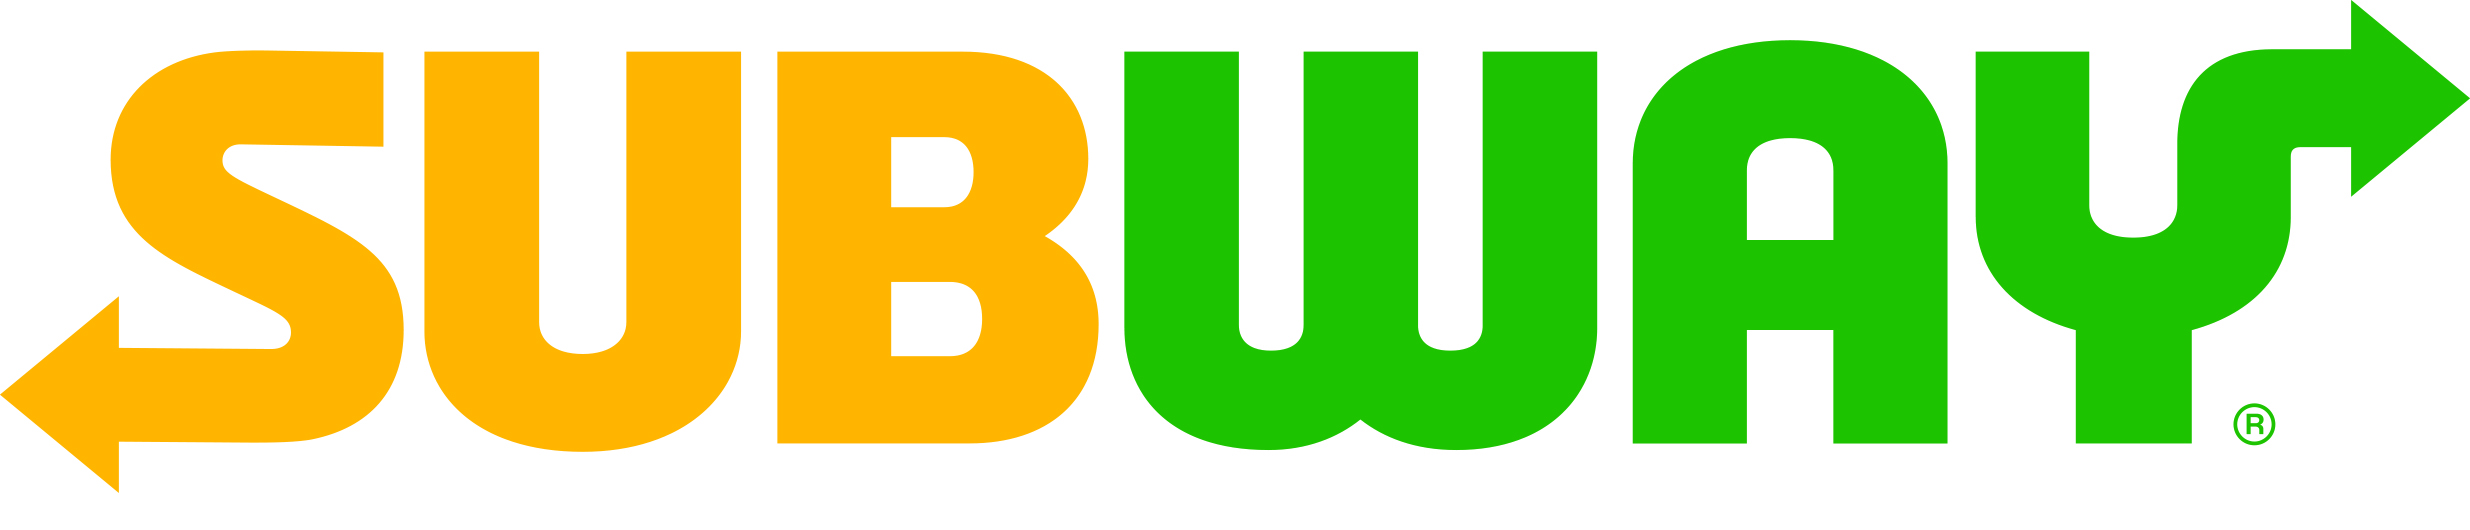 Wainwright_PFC_Softball_Subway_Logo.jpg